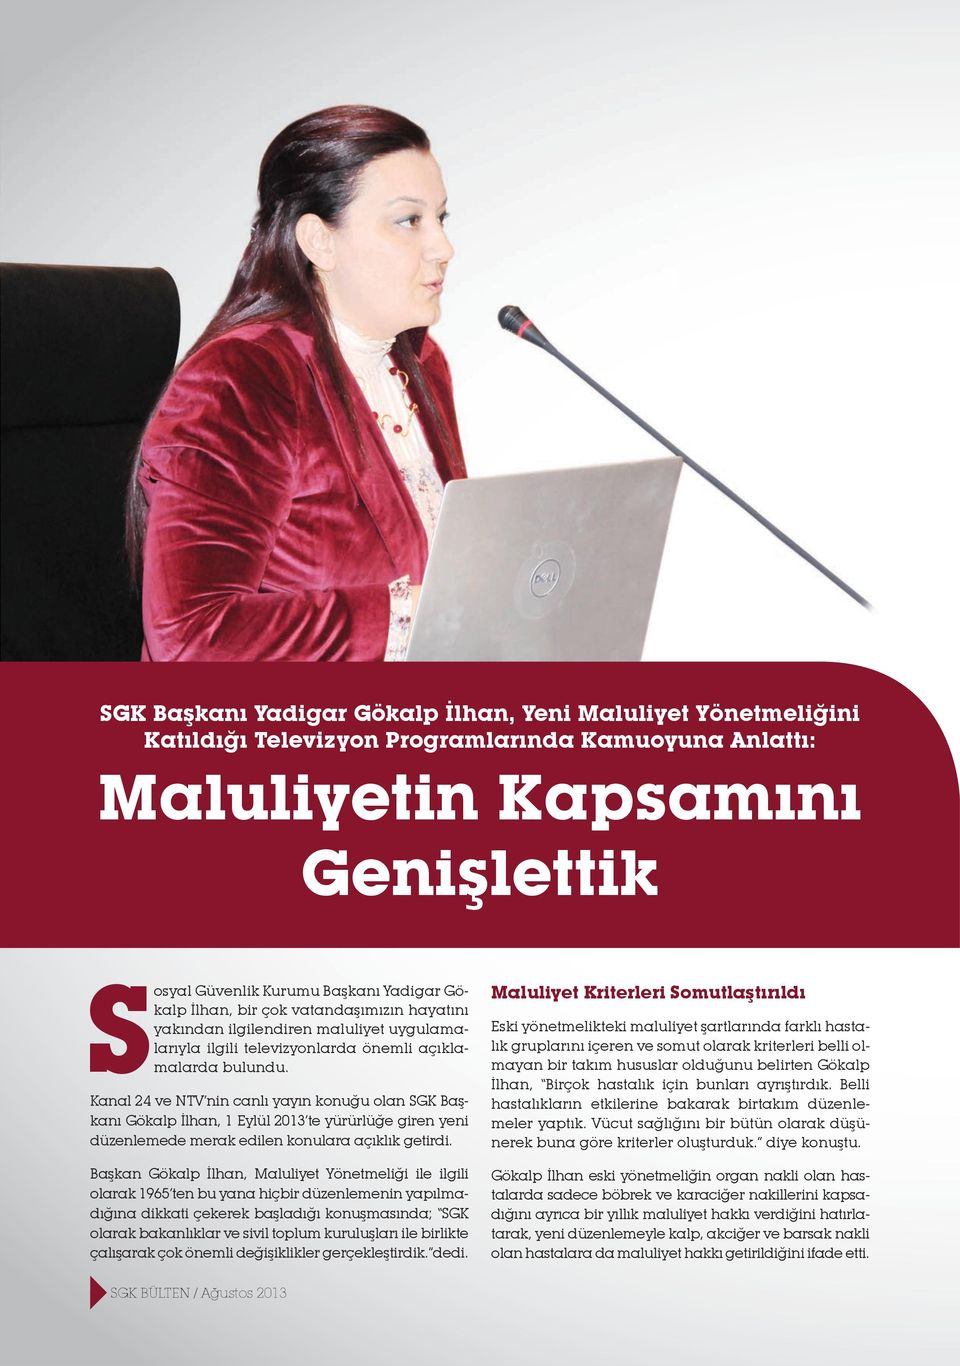 Kanal 24 ve NTV nin canlı yayın konuğu olan SGK Başkanı Gökalp İlhan, 1 Eylül 2013 te yürürlüğe giren yeni düzenlemede merak edilen konulara açıklık getirdi.